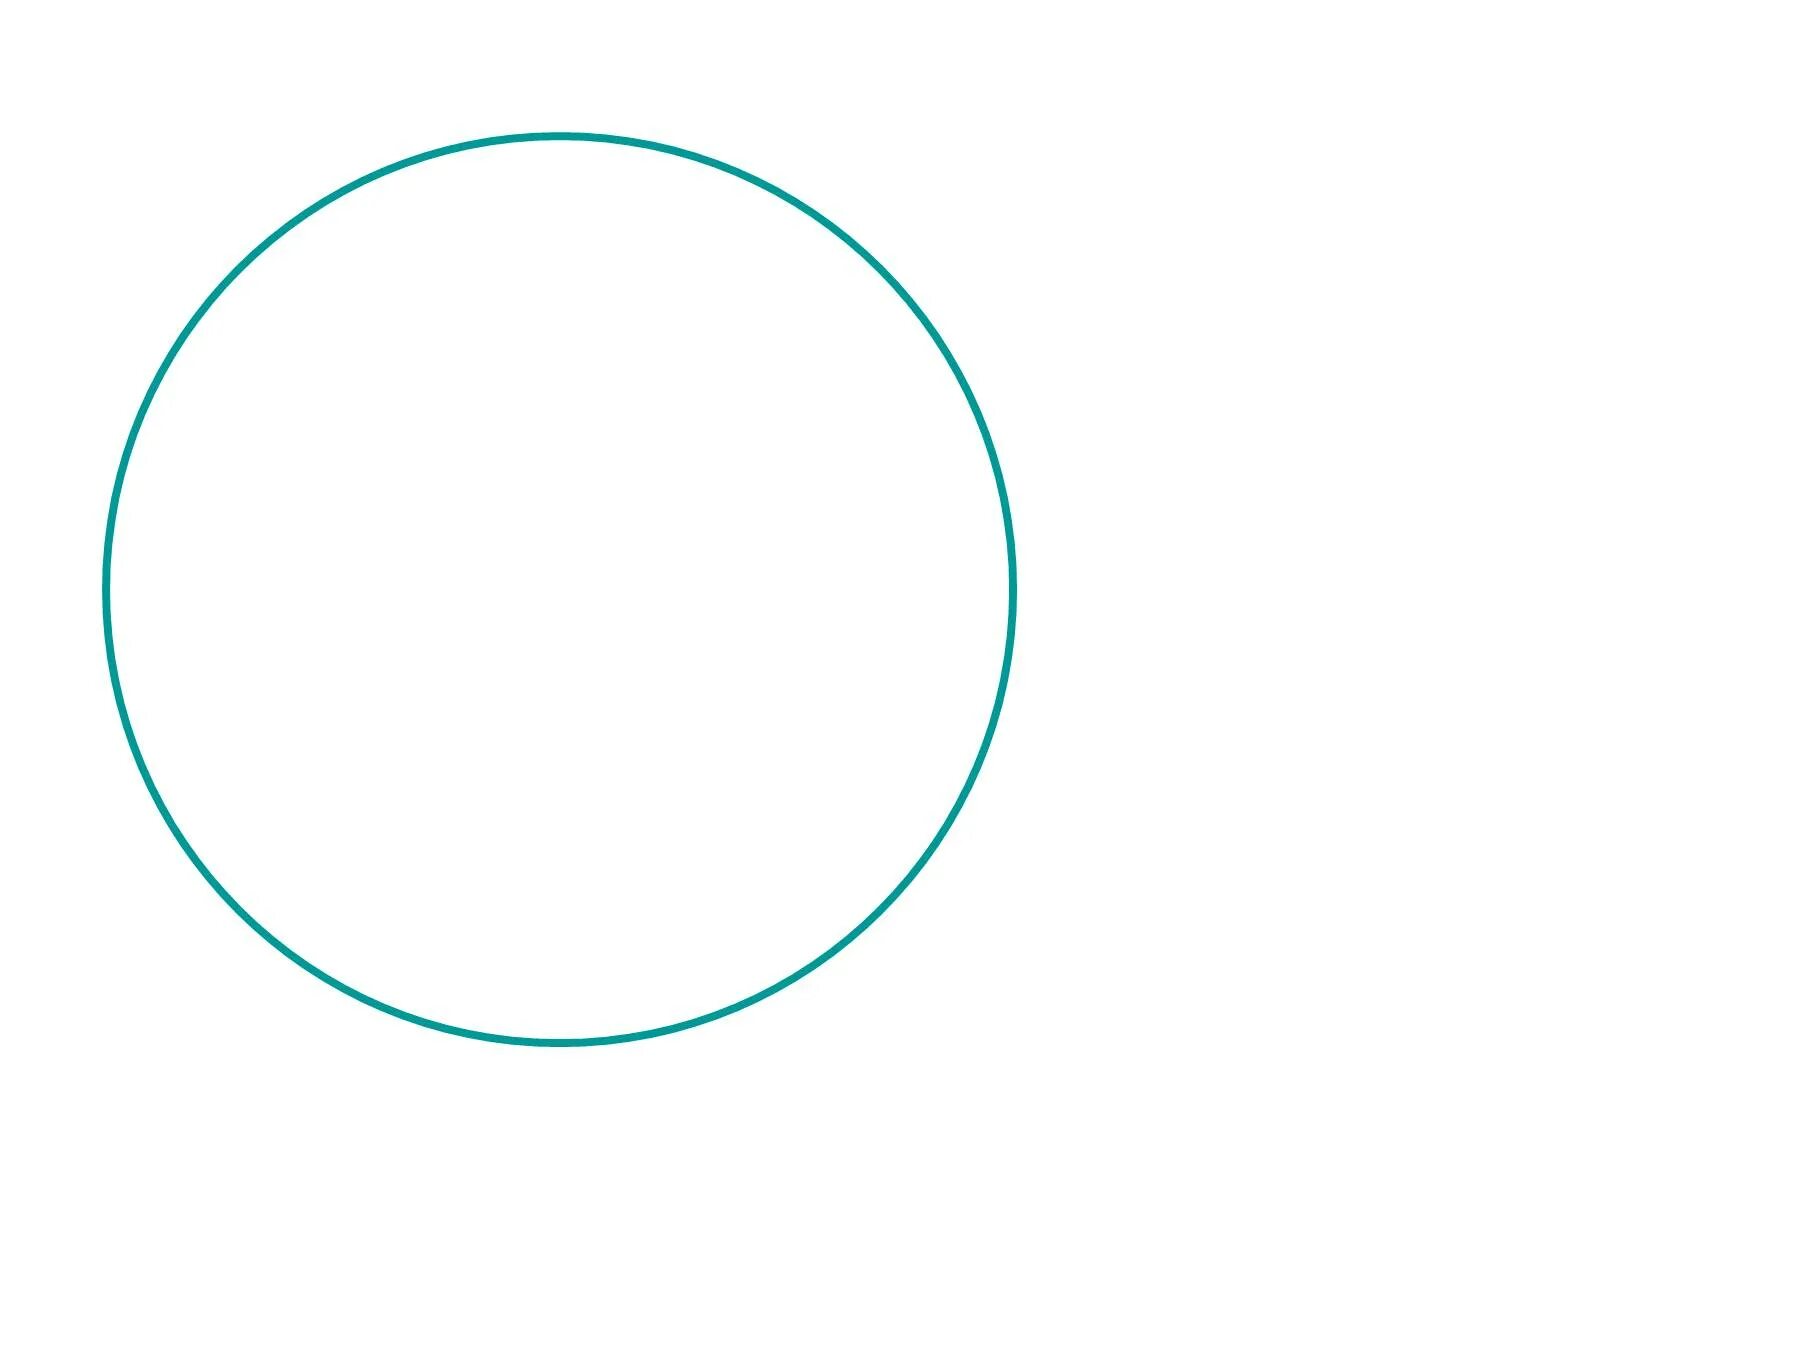 Круг. Круг нарисованный. Голубой круг. Тонкий круг.